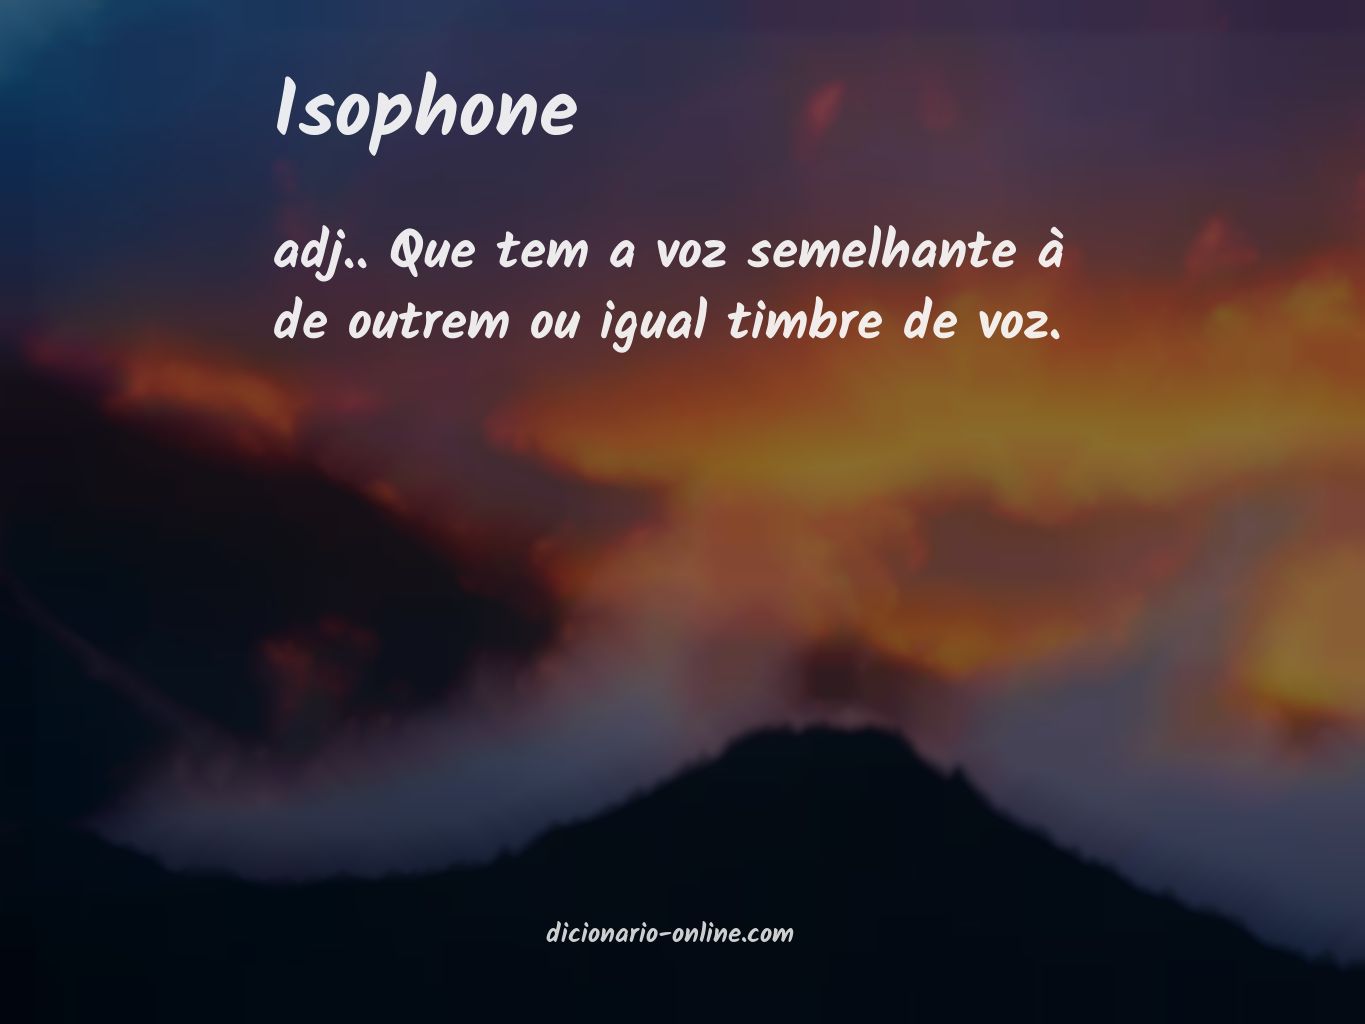 Significado de isophone